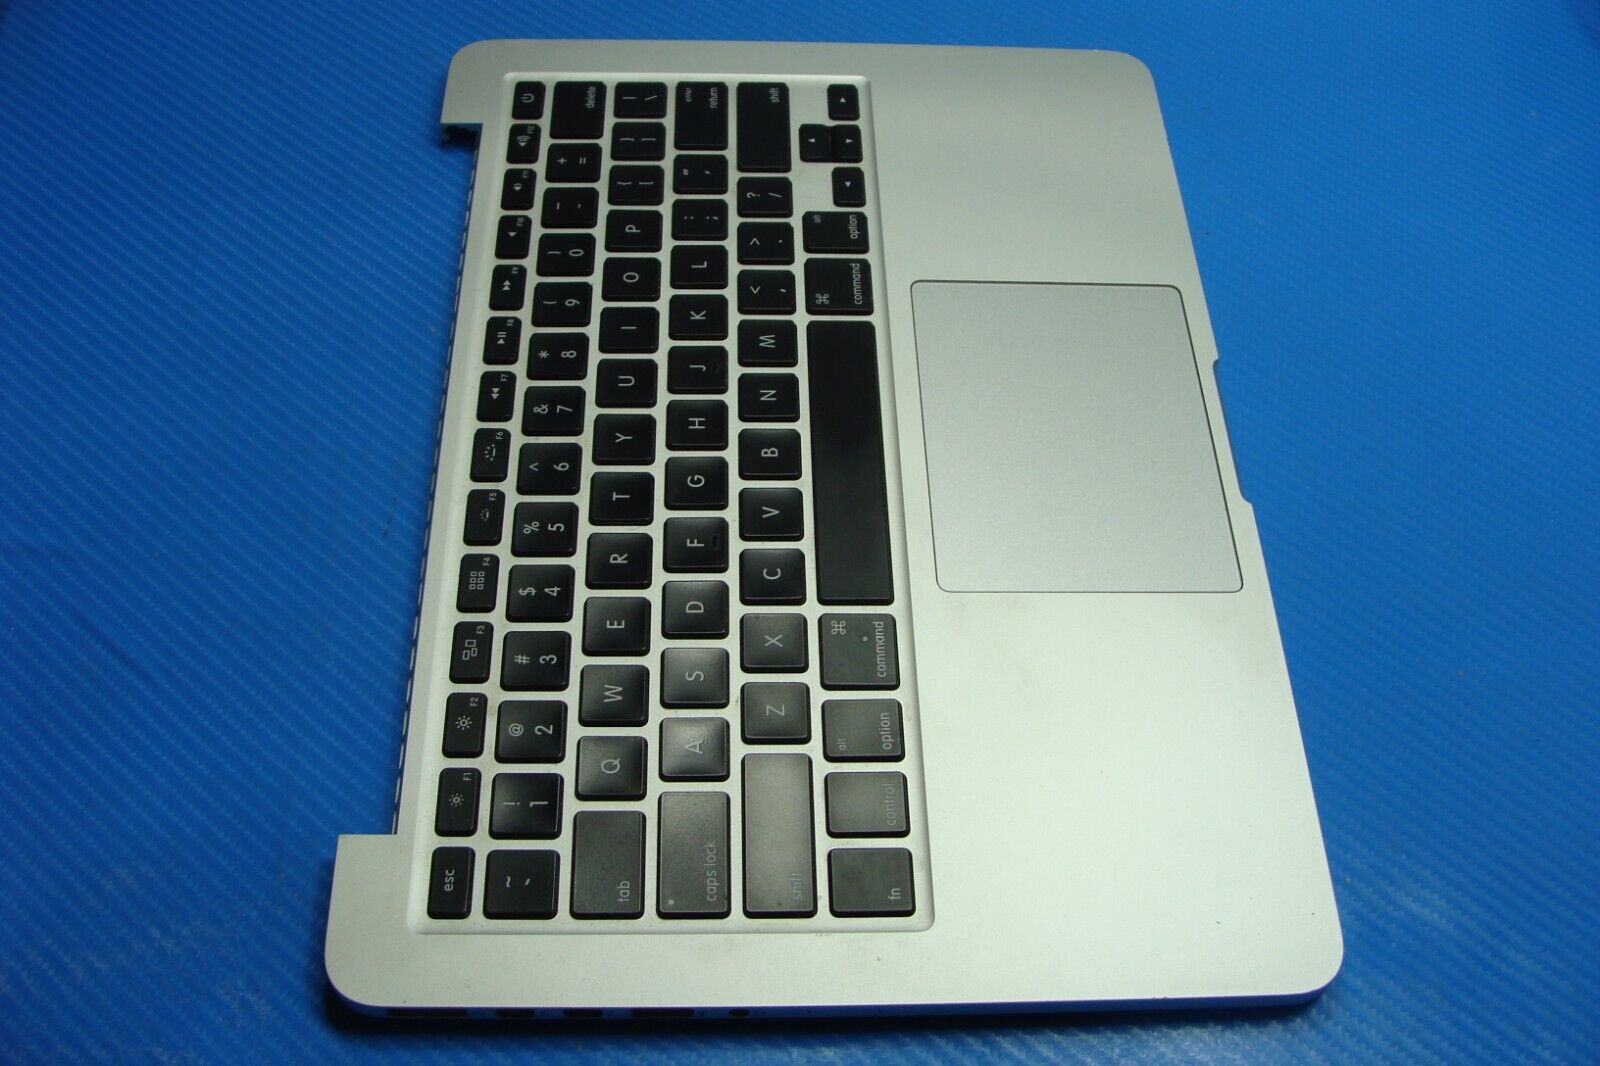 MacBook Pro A1502 MF839LL/A MF840LL/A 2015 13